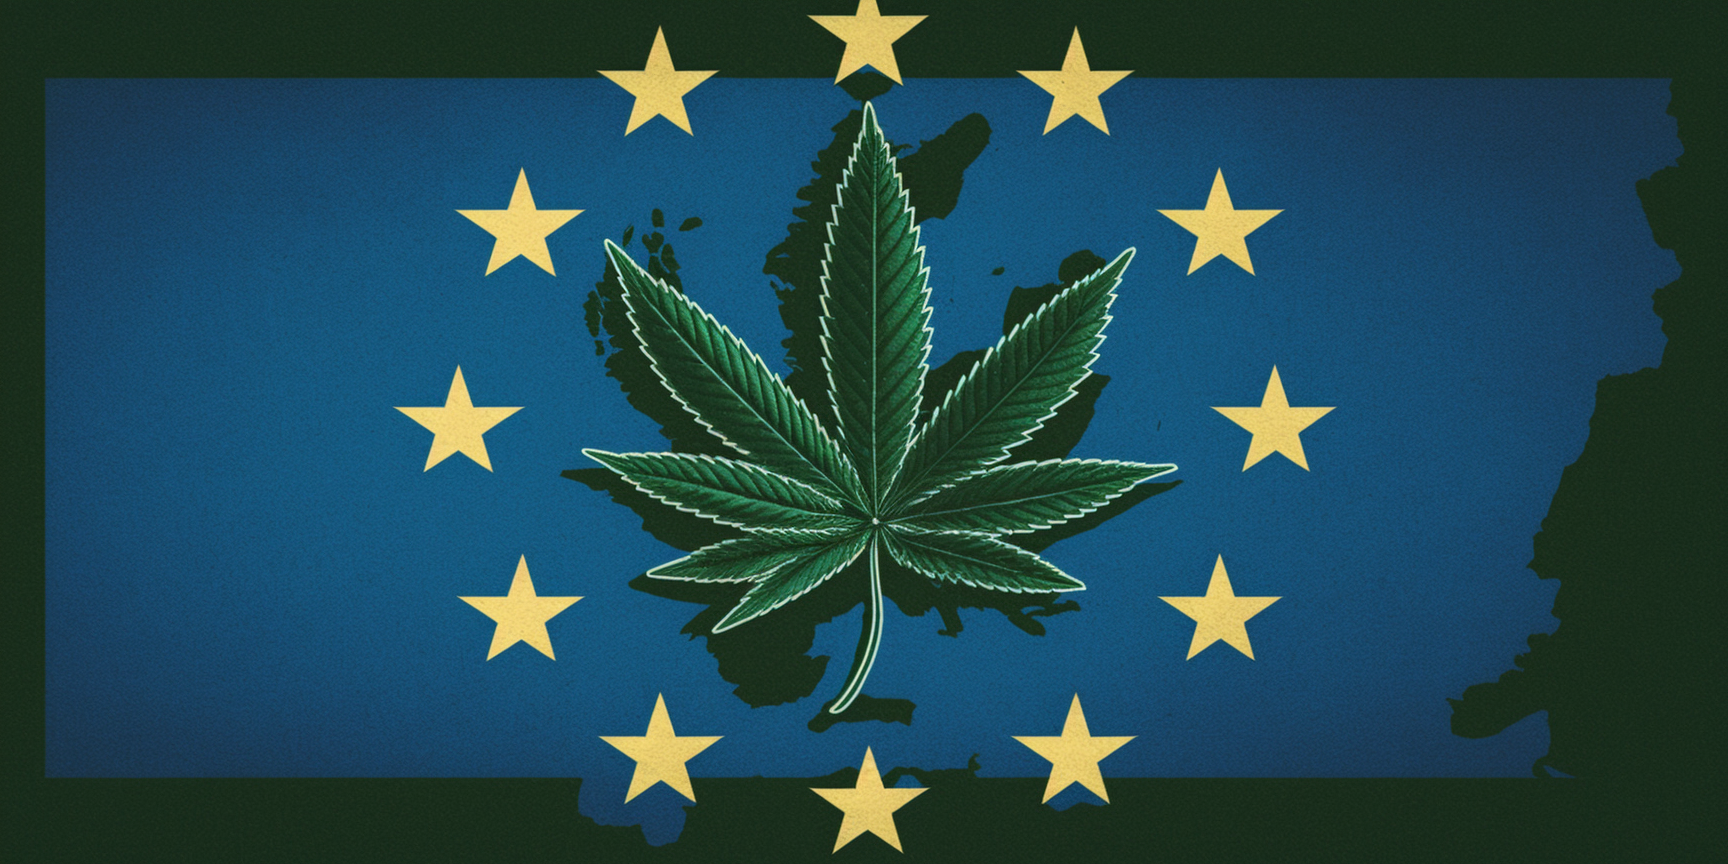 Cadre juridique européen relatif au cannabis